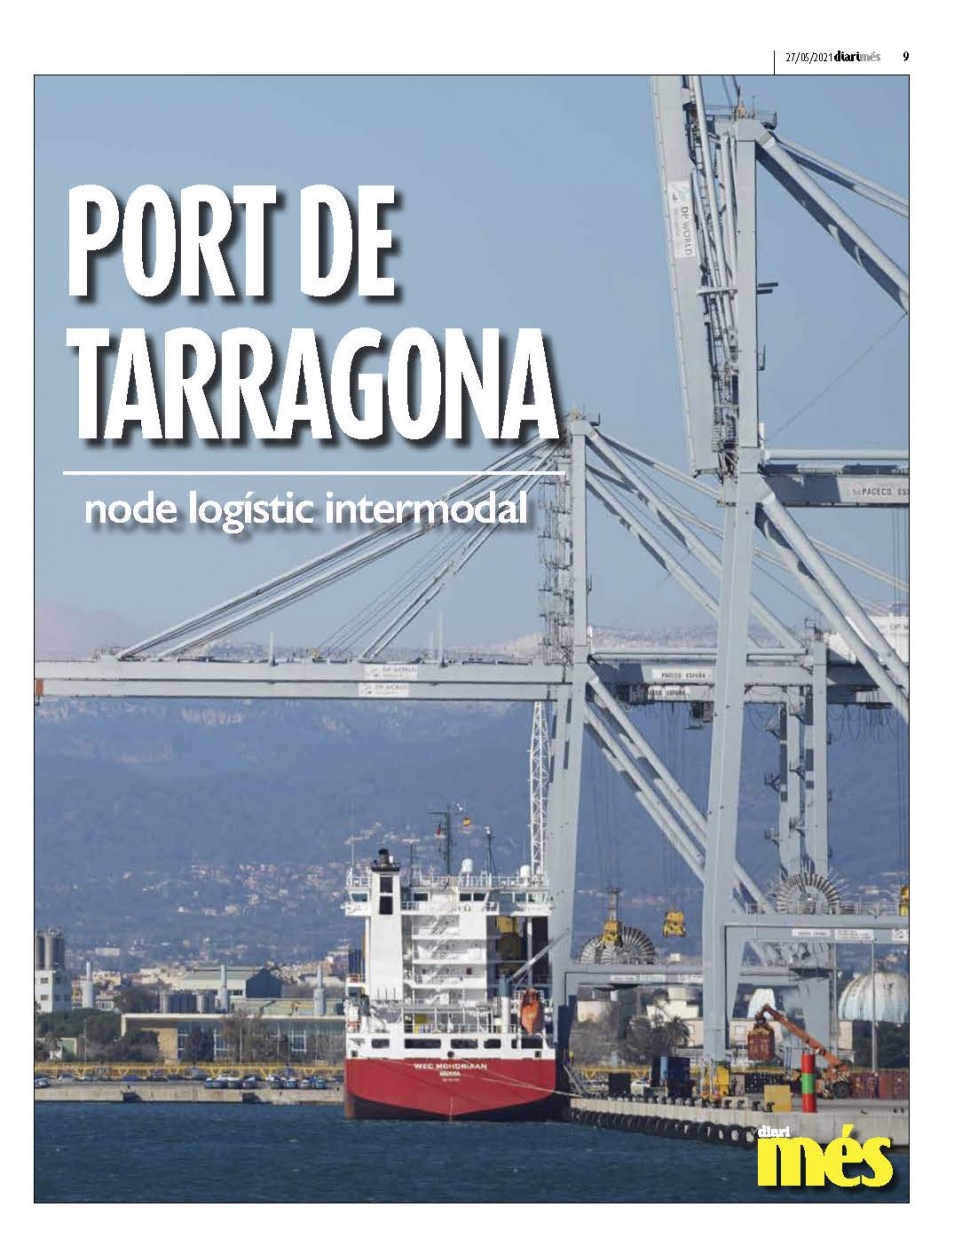 Port de Tarragona, node logístic intermodal - Especial Més Tarragona 27 Maig 2021